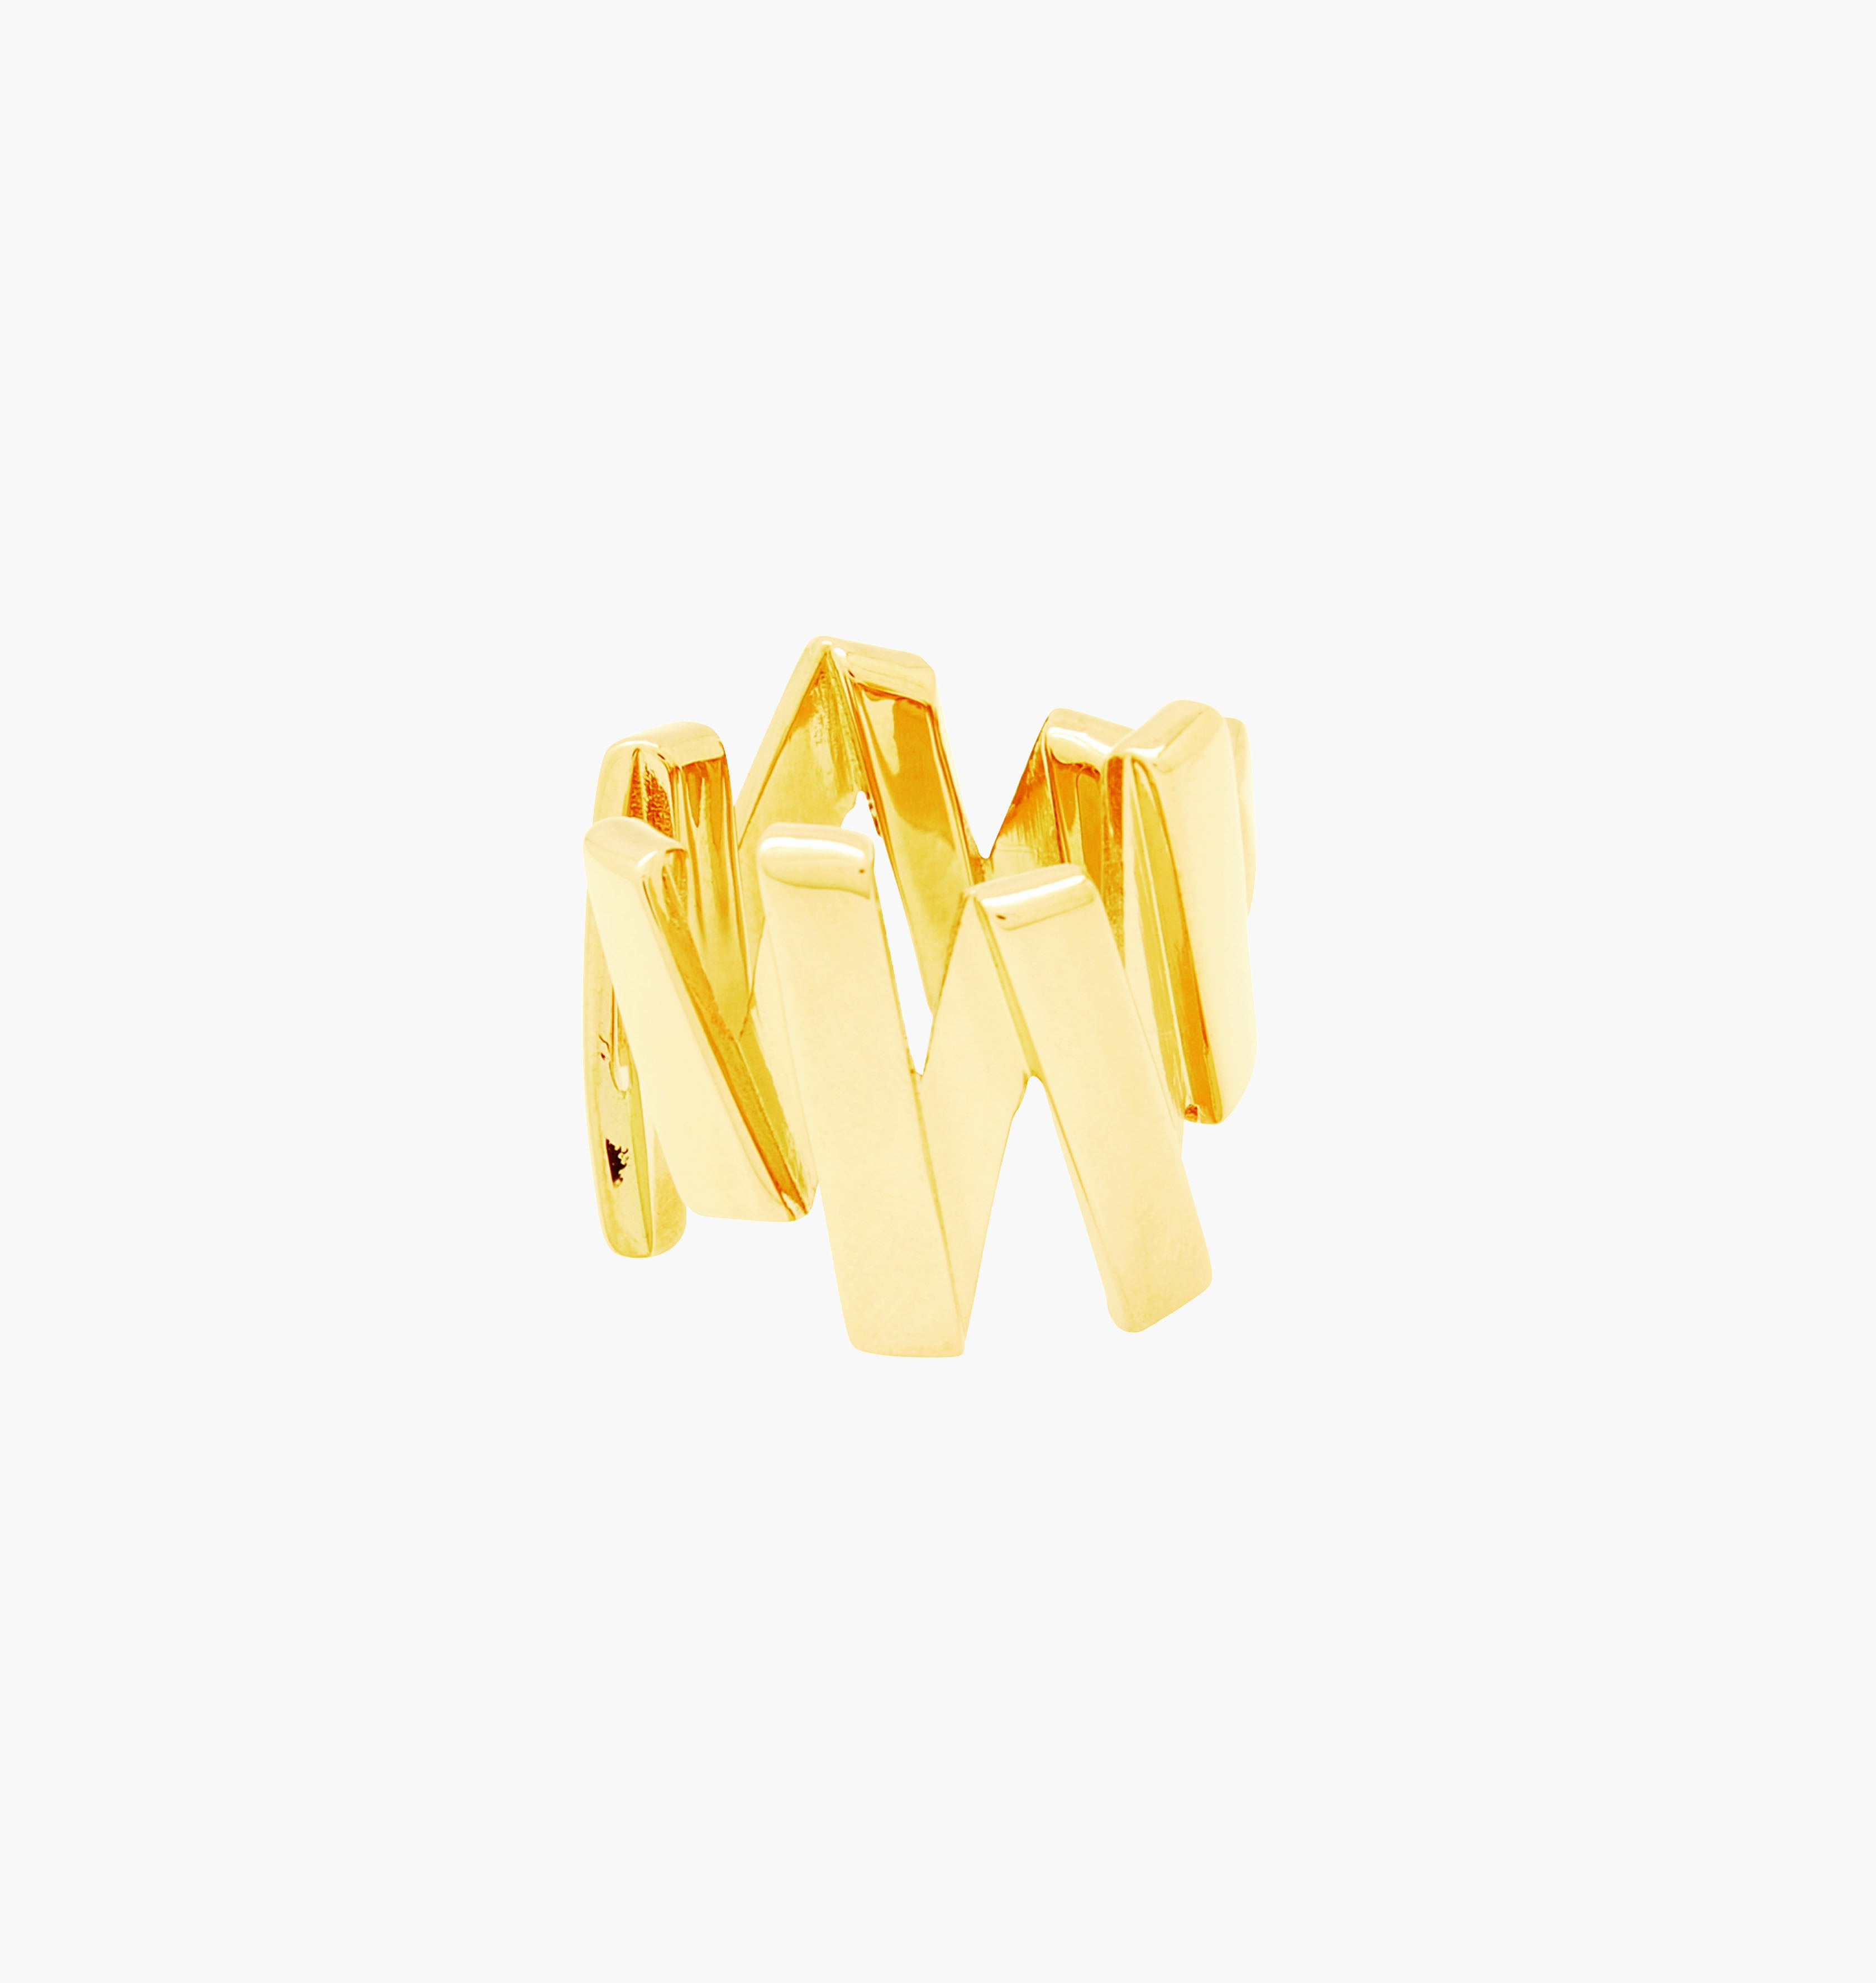 Notre bague VIBRATIONS est réalisée en bronze dorée à l'or fin. Elegante et minimale, elle perfectionnera votre style avec une touche de modernité et fun, pour un look sophistiqué.bijoux doré or, bijoux créateurs fabriqué made in Belgium , bague originale, bague or doré, zigzag, éclair